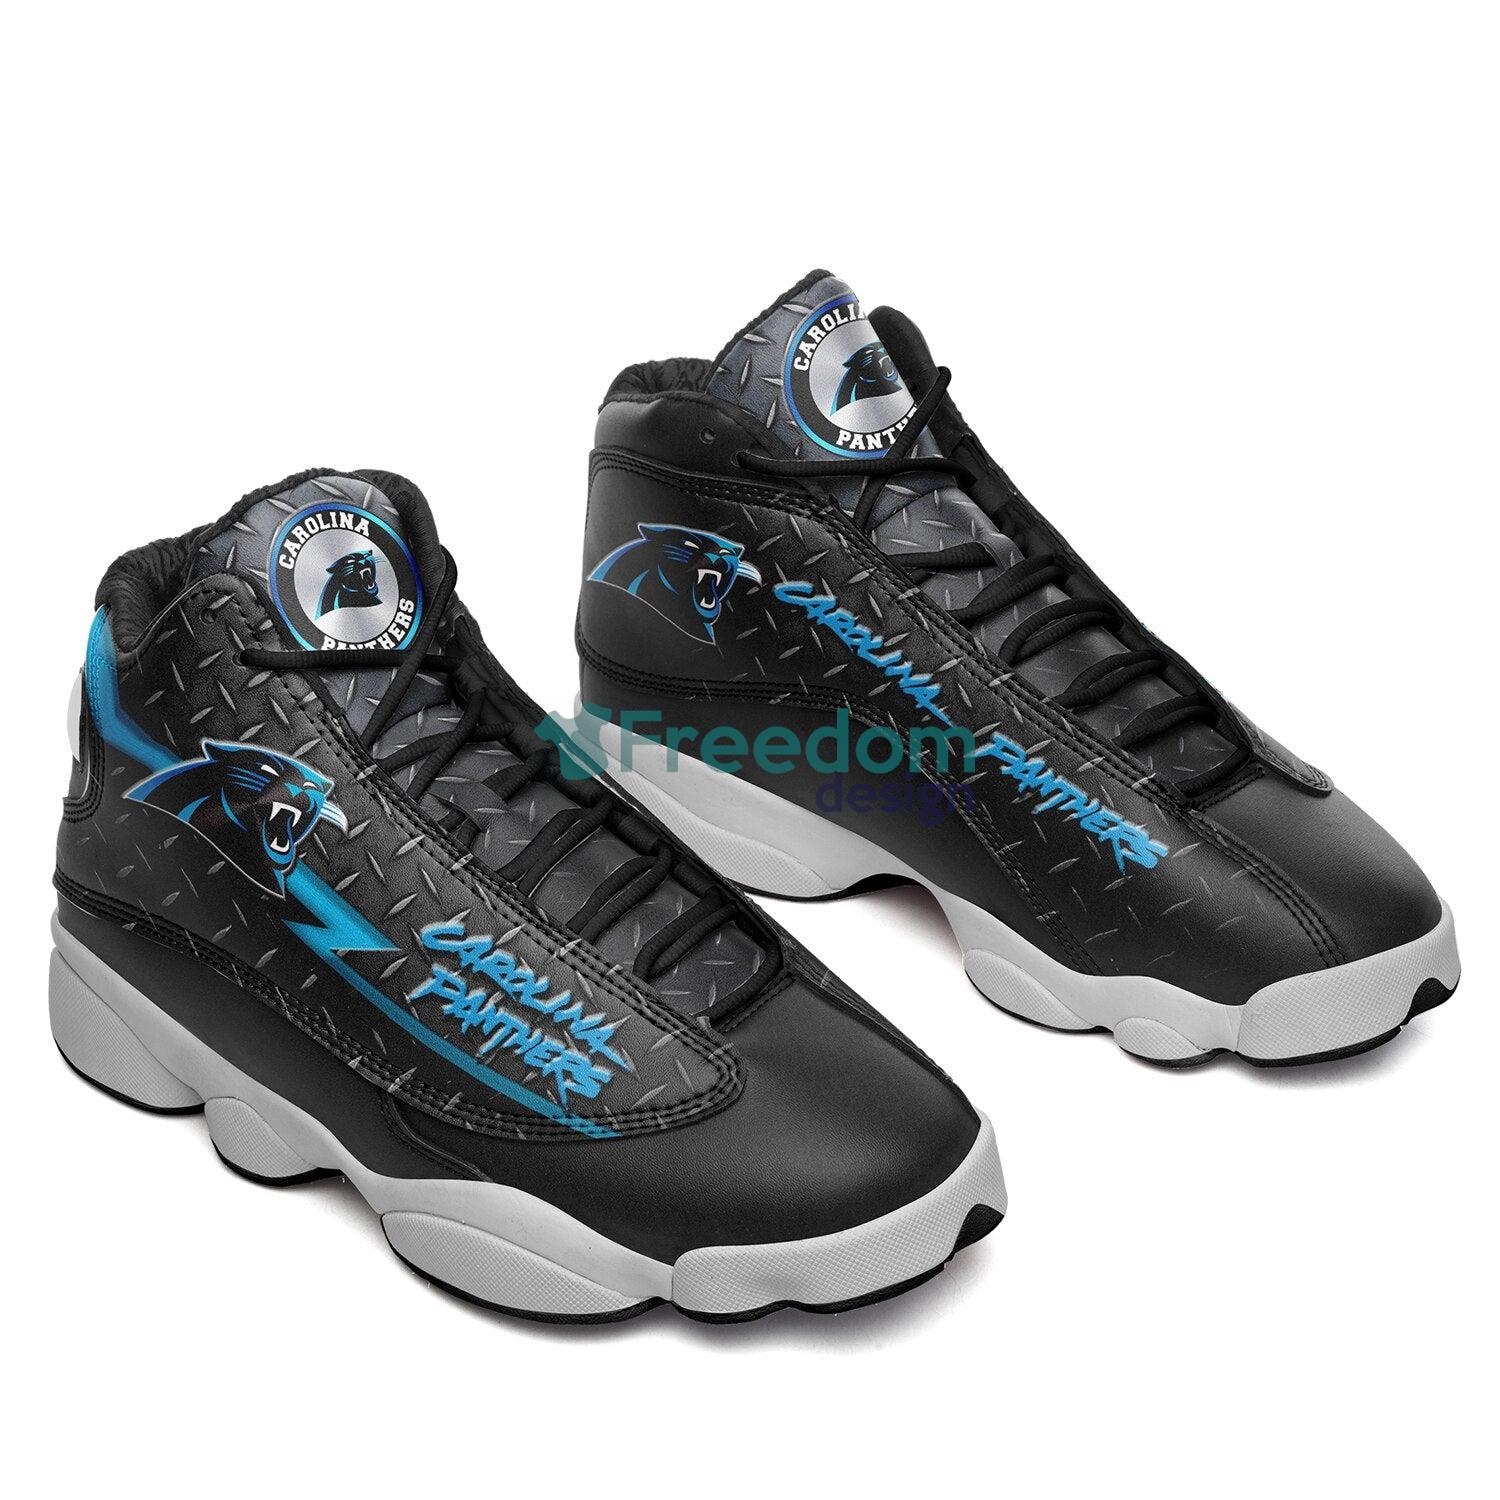 Carolina Panthers Team Air Jordan 13 Shoes For Fans